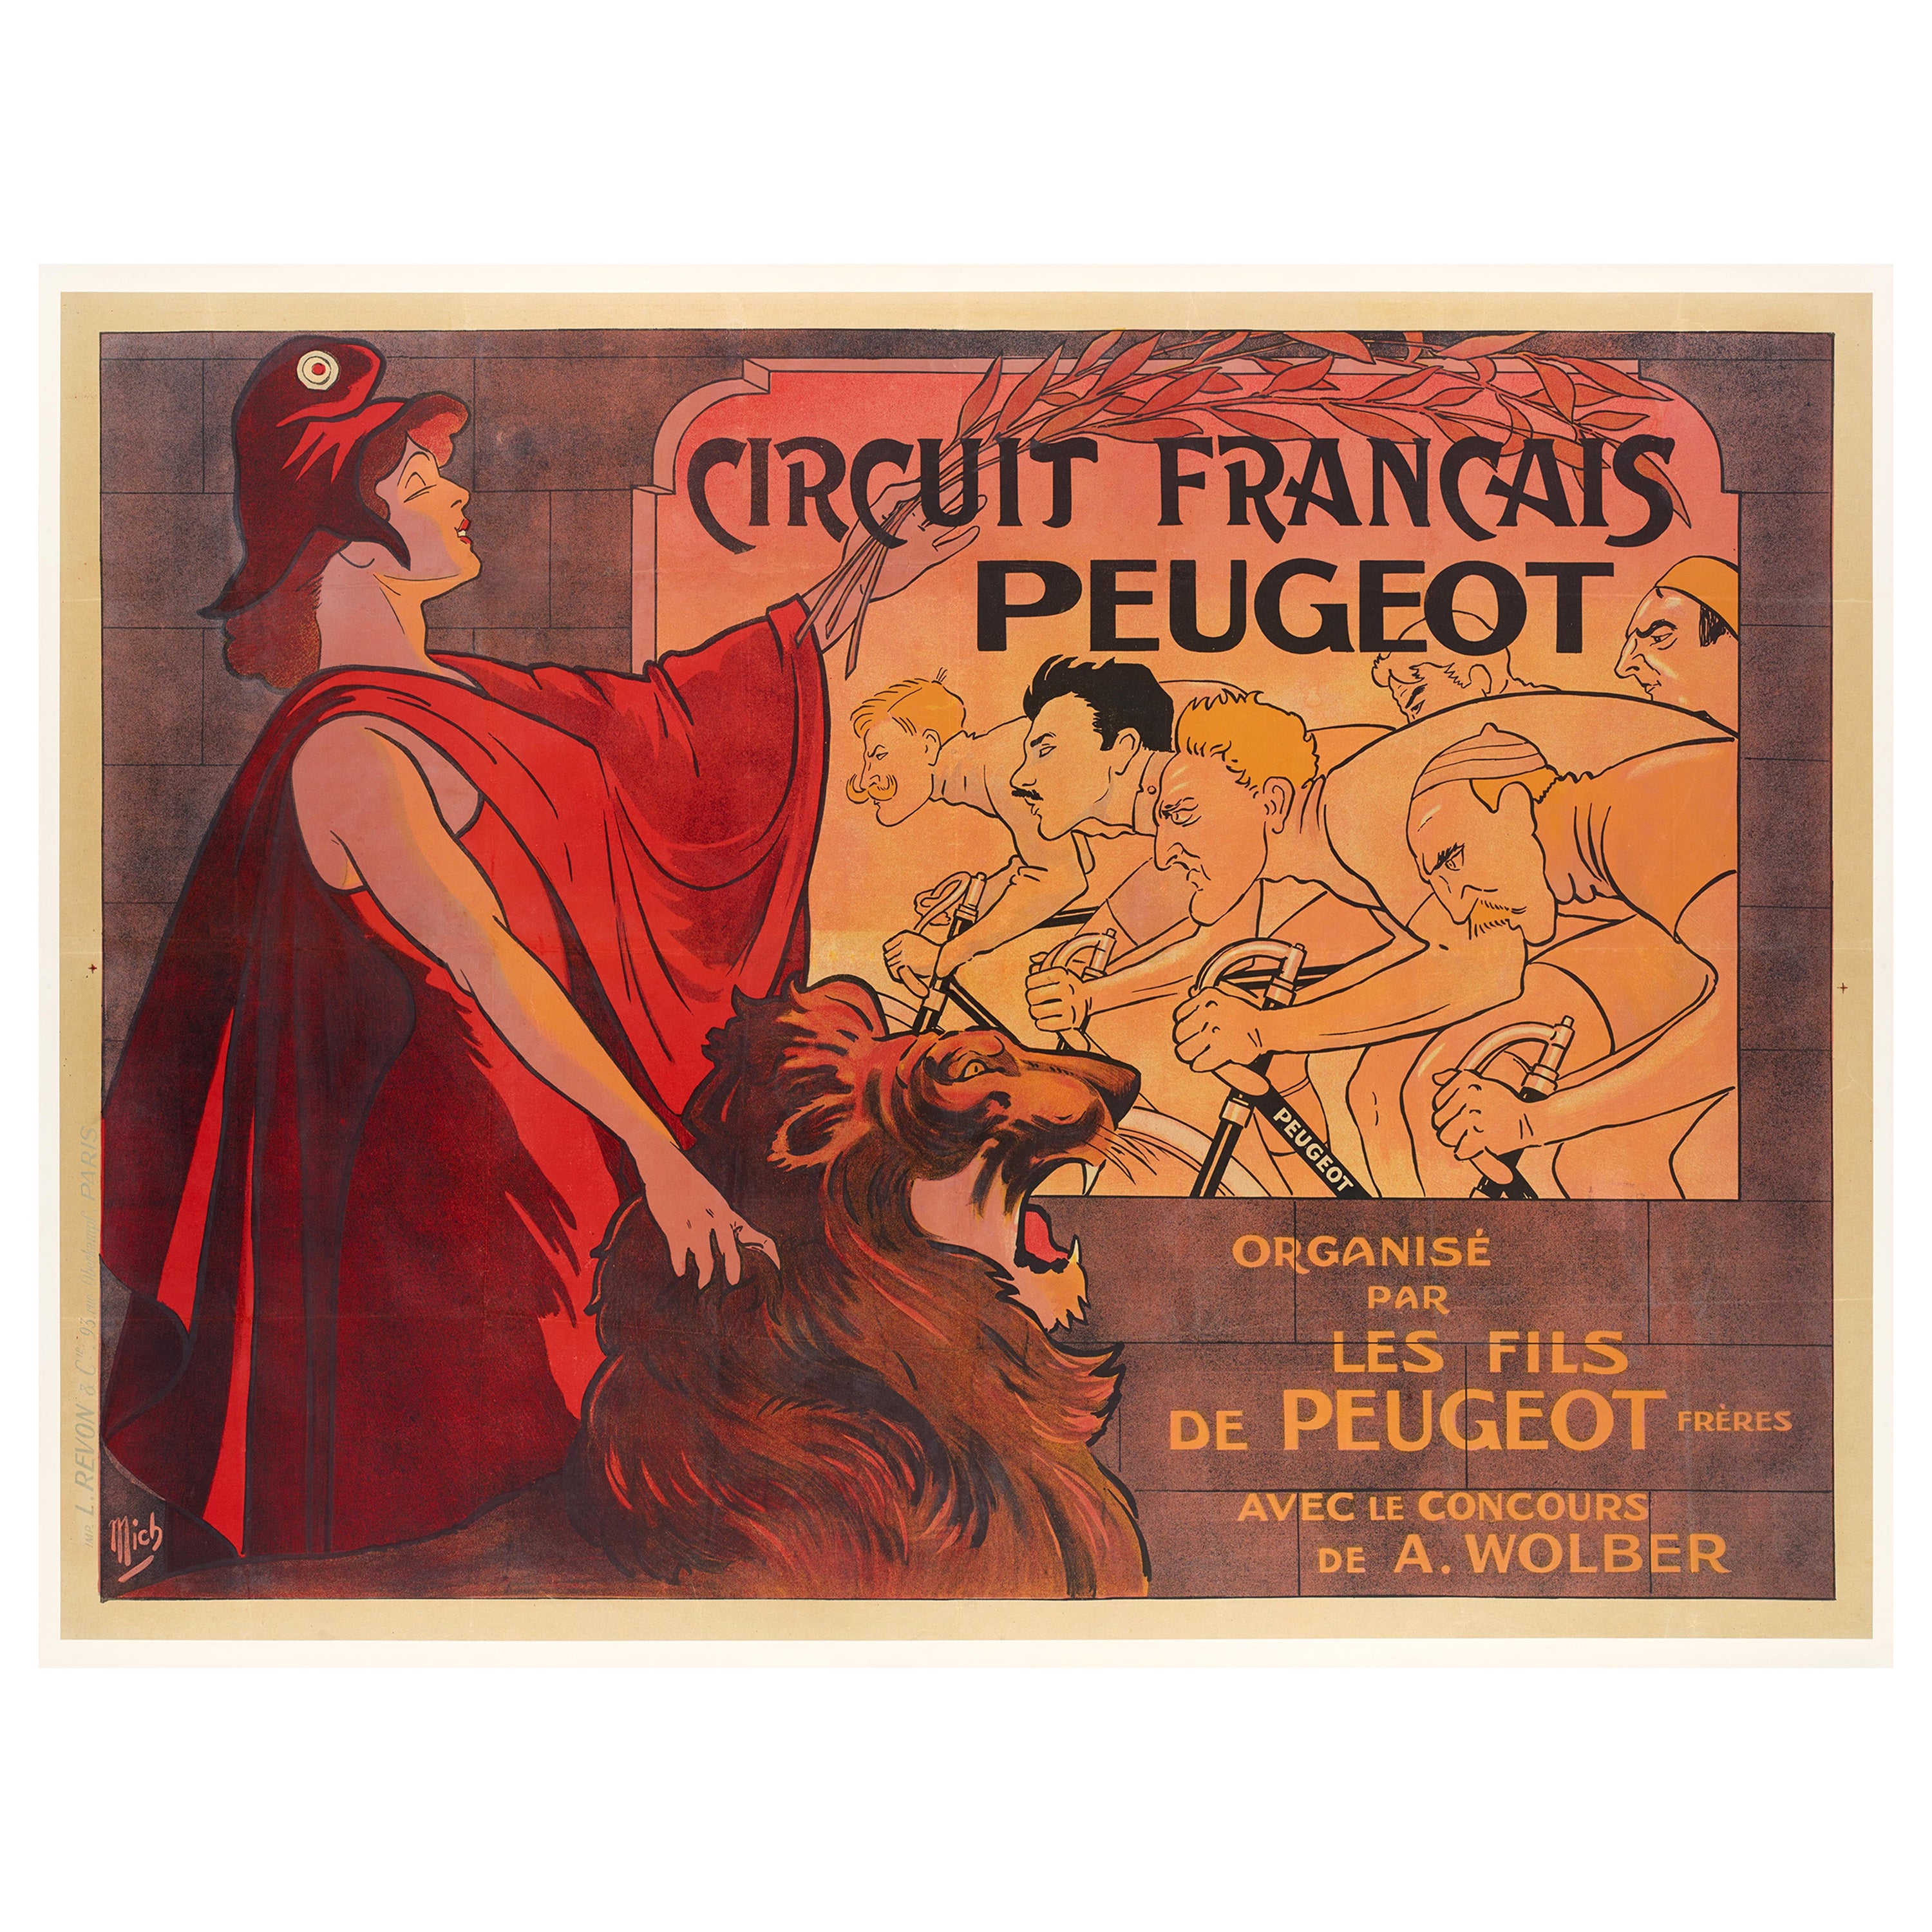 Mich, Original-Vintage-Poster, Circuit Francais Peugeot, Fahrradrennen, Löwe, 1911